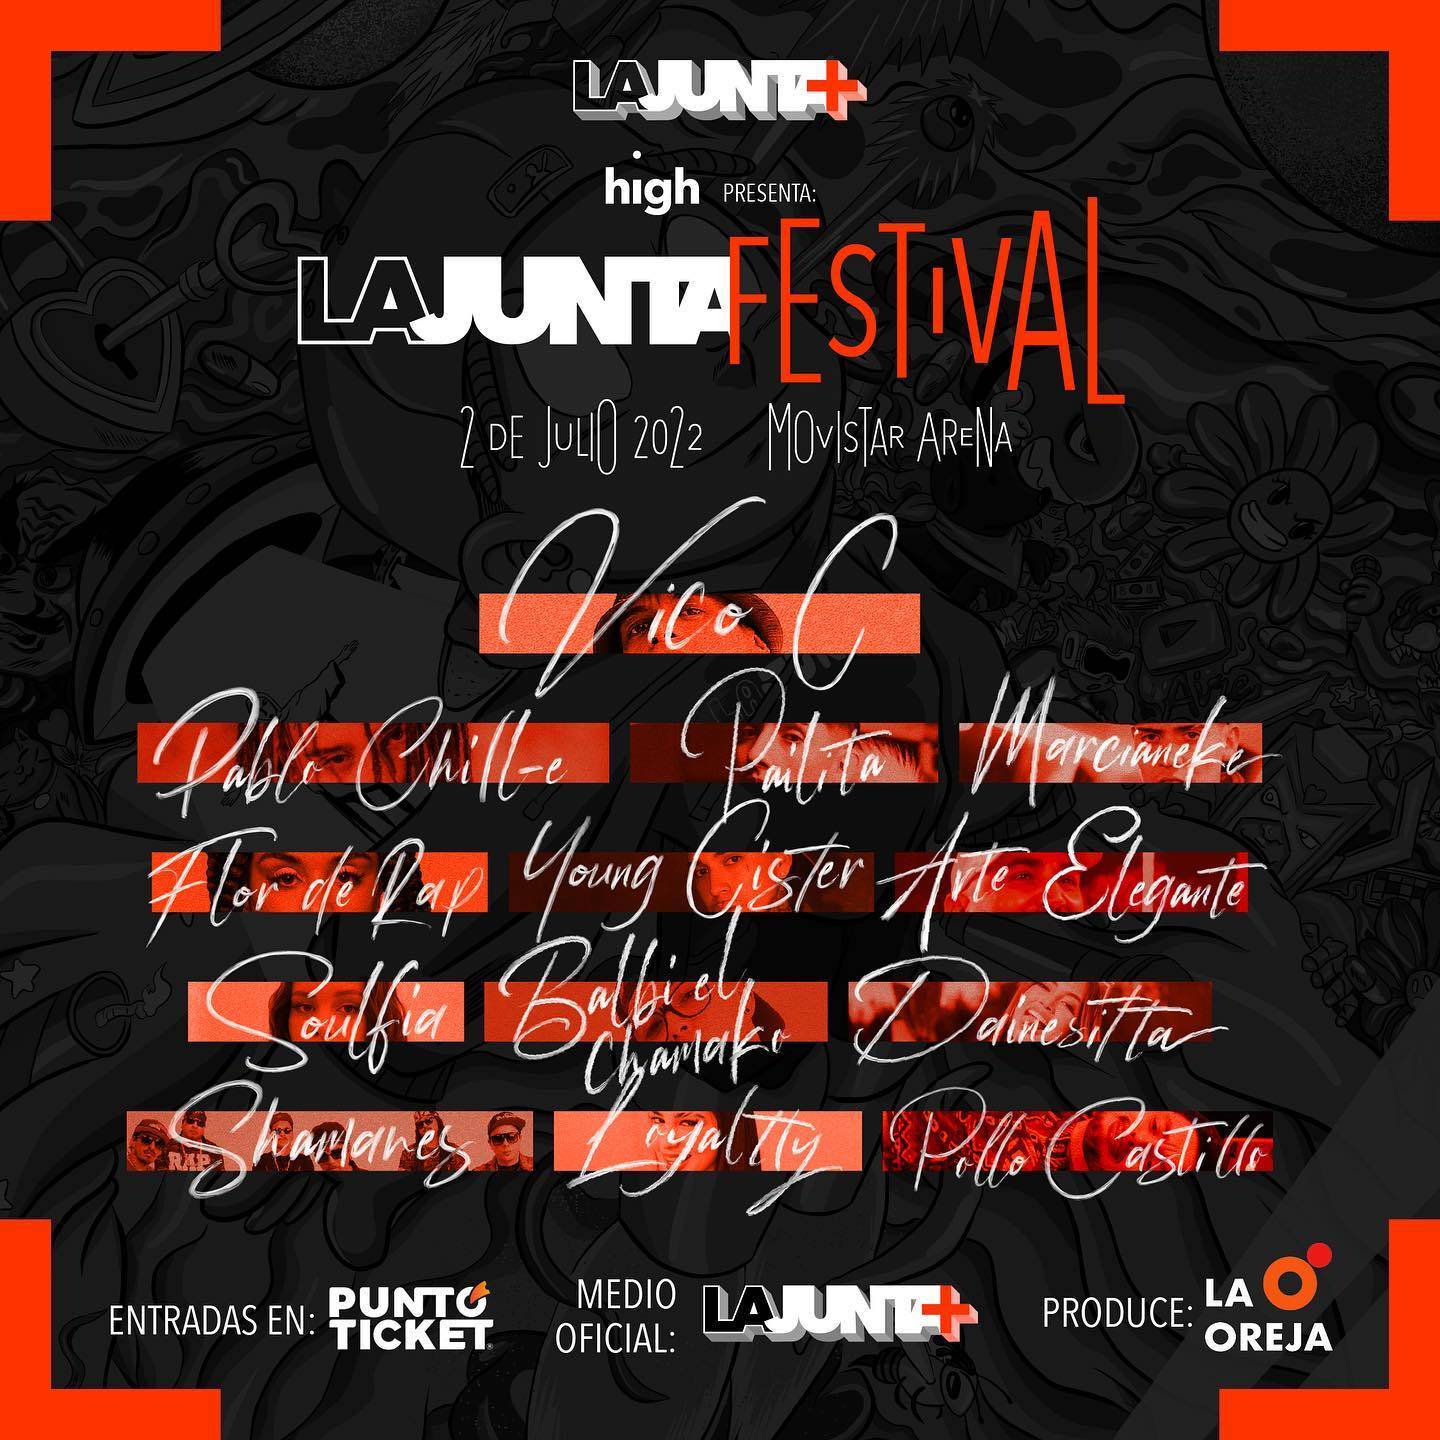 La Junta Festival